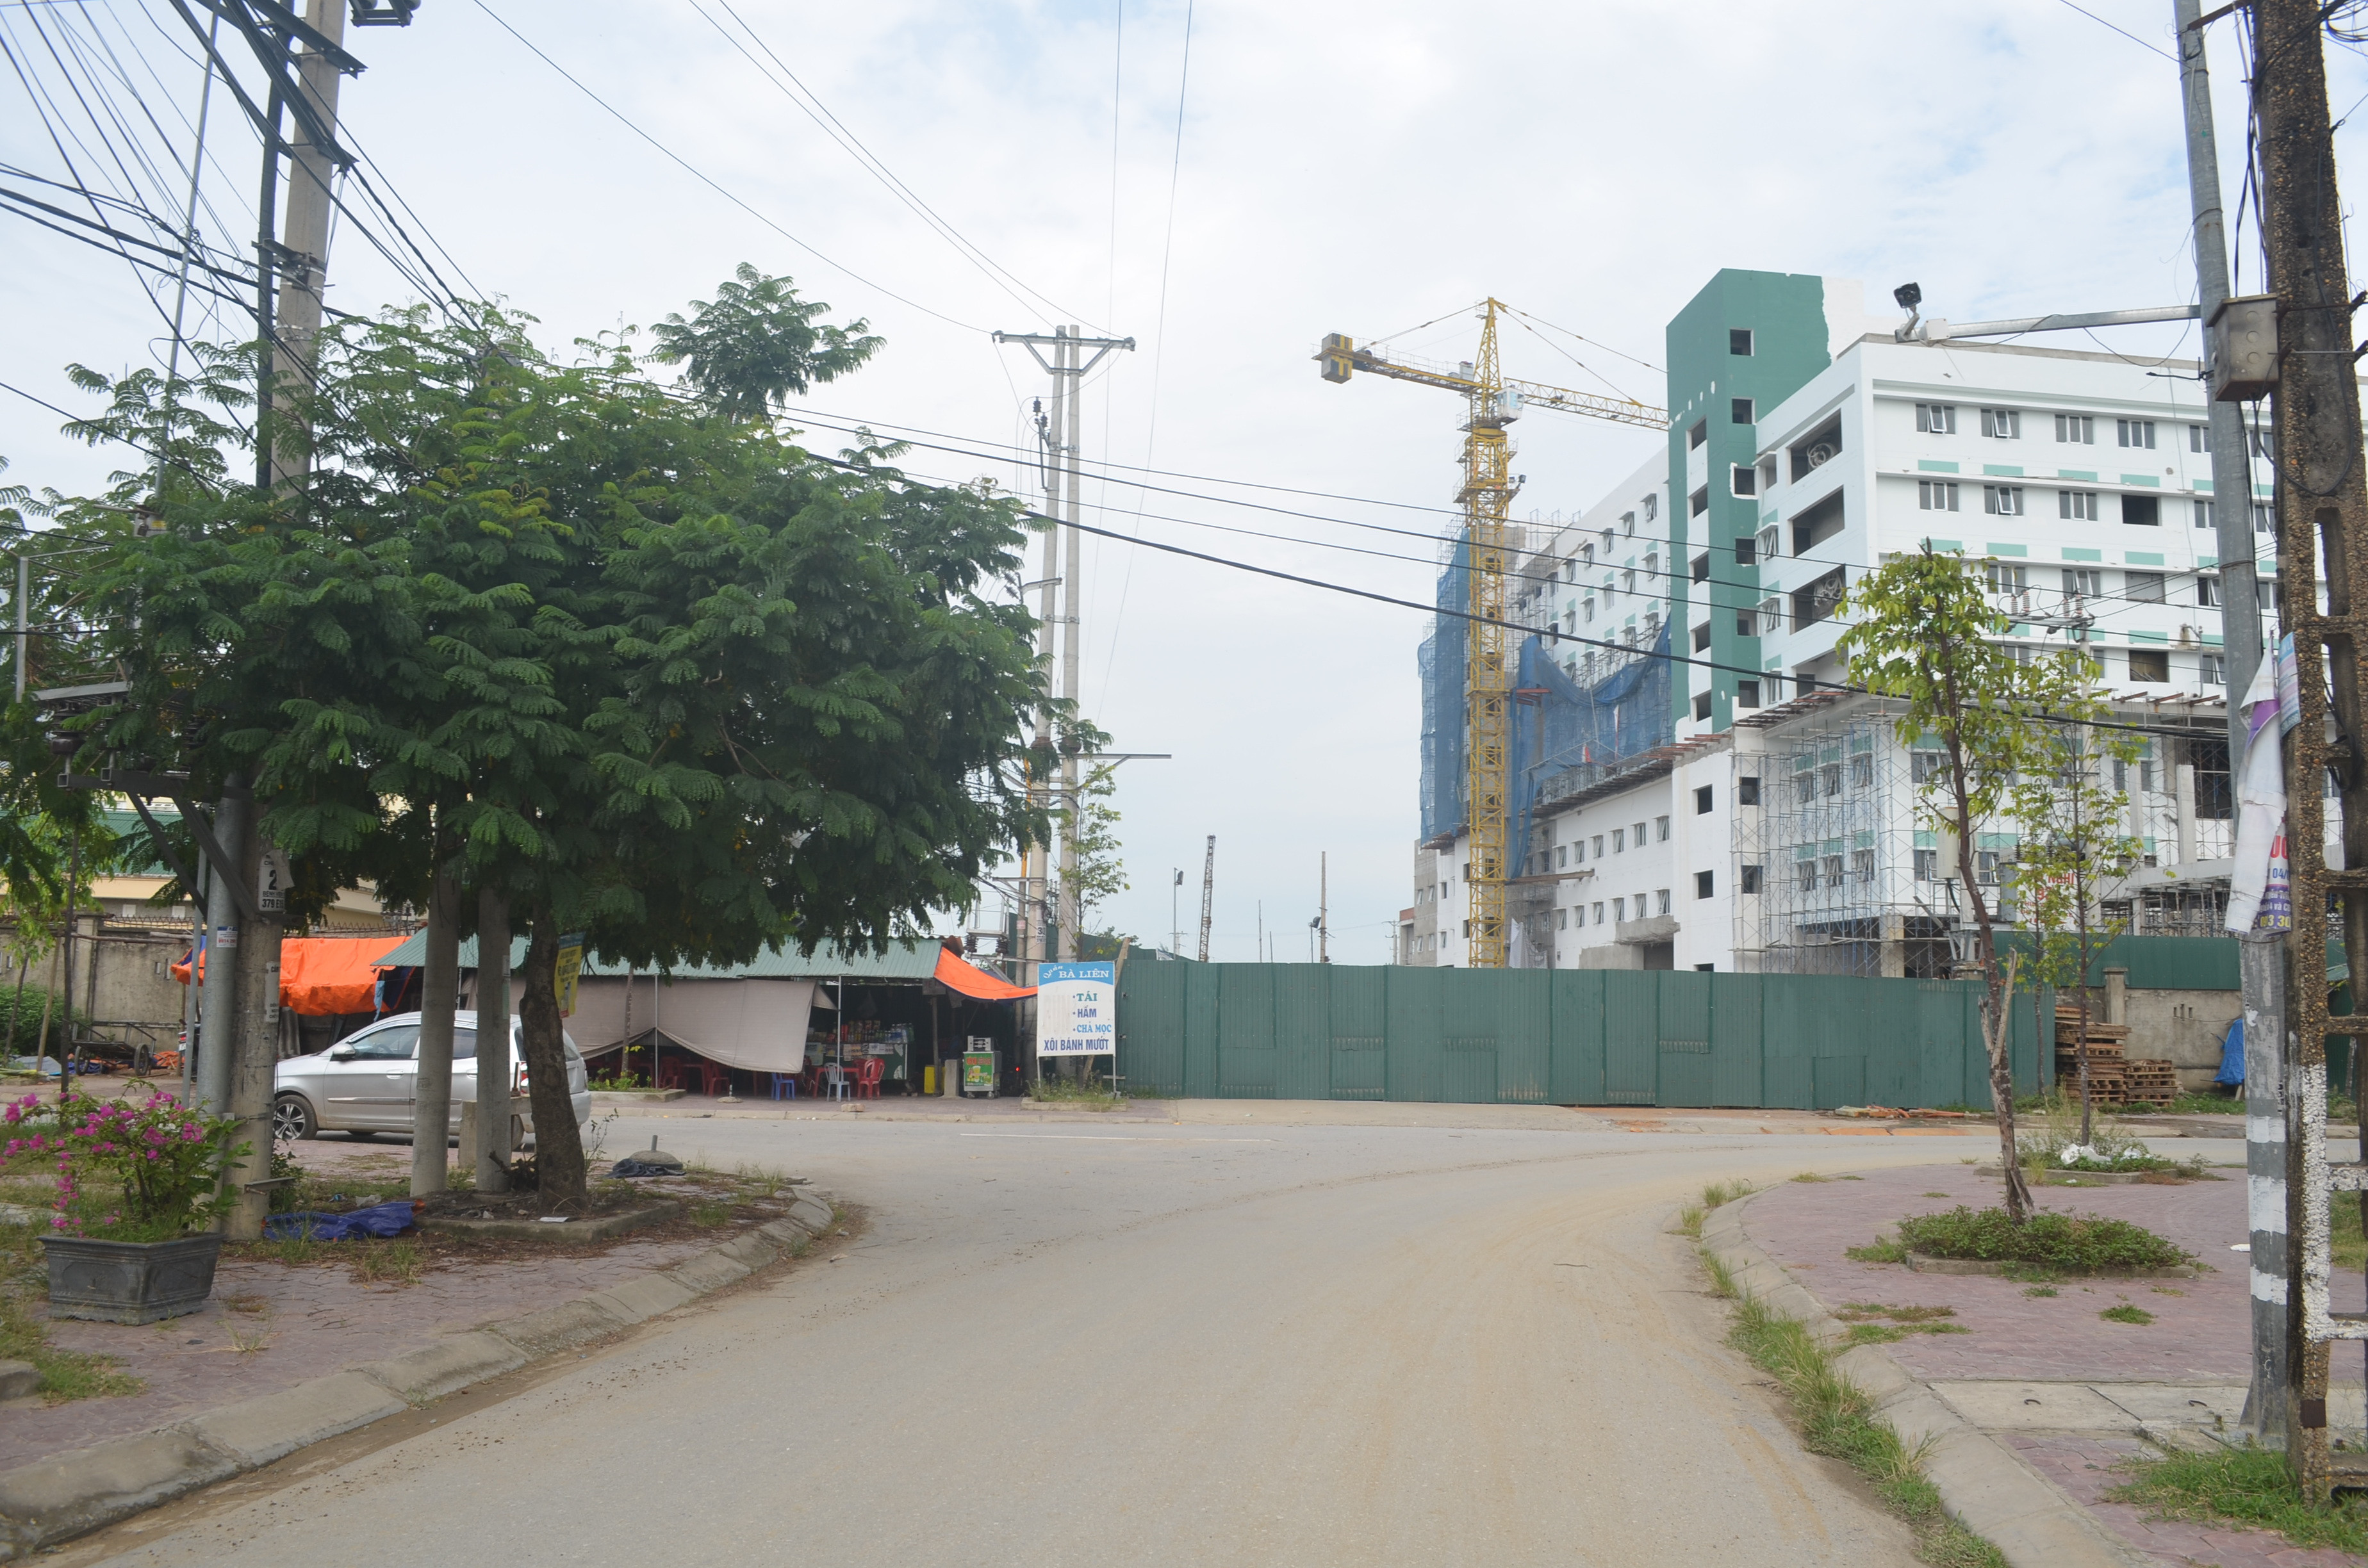 Đoạn cuối đường Hồ Tông Thốc để thông ra Đại lộ Xô Viết Nghệ Tĩnh bị đóng bởi việc thực hiện dự án bệnh viện. Ảnh Nhật Lân.